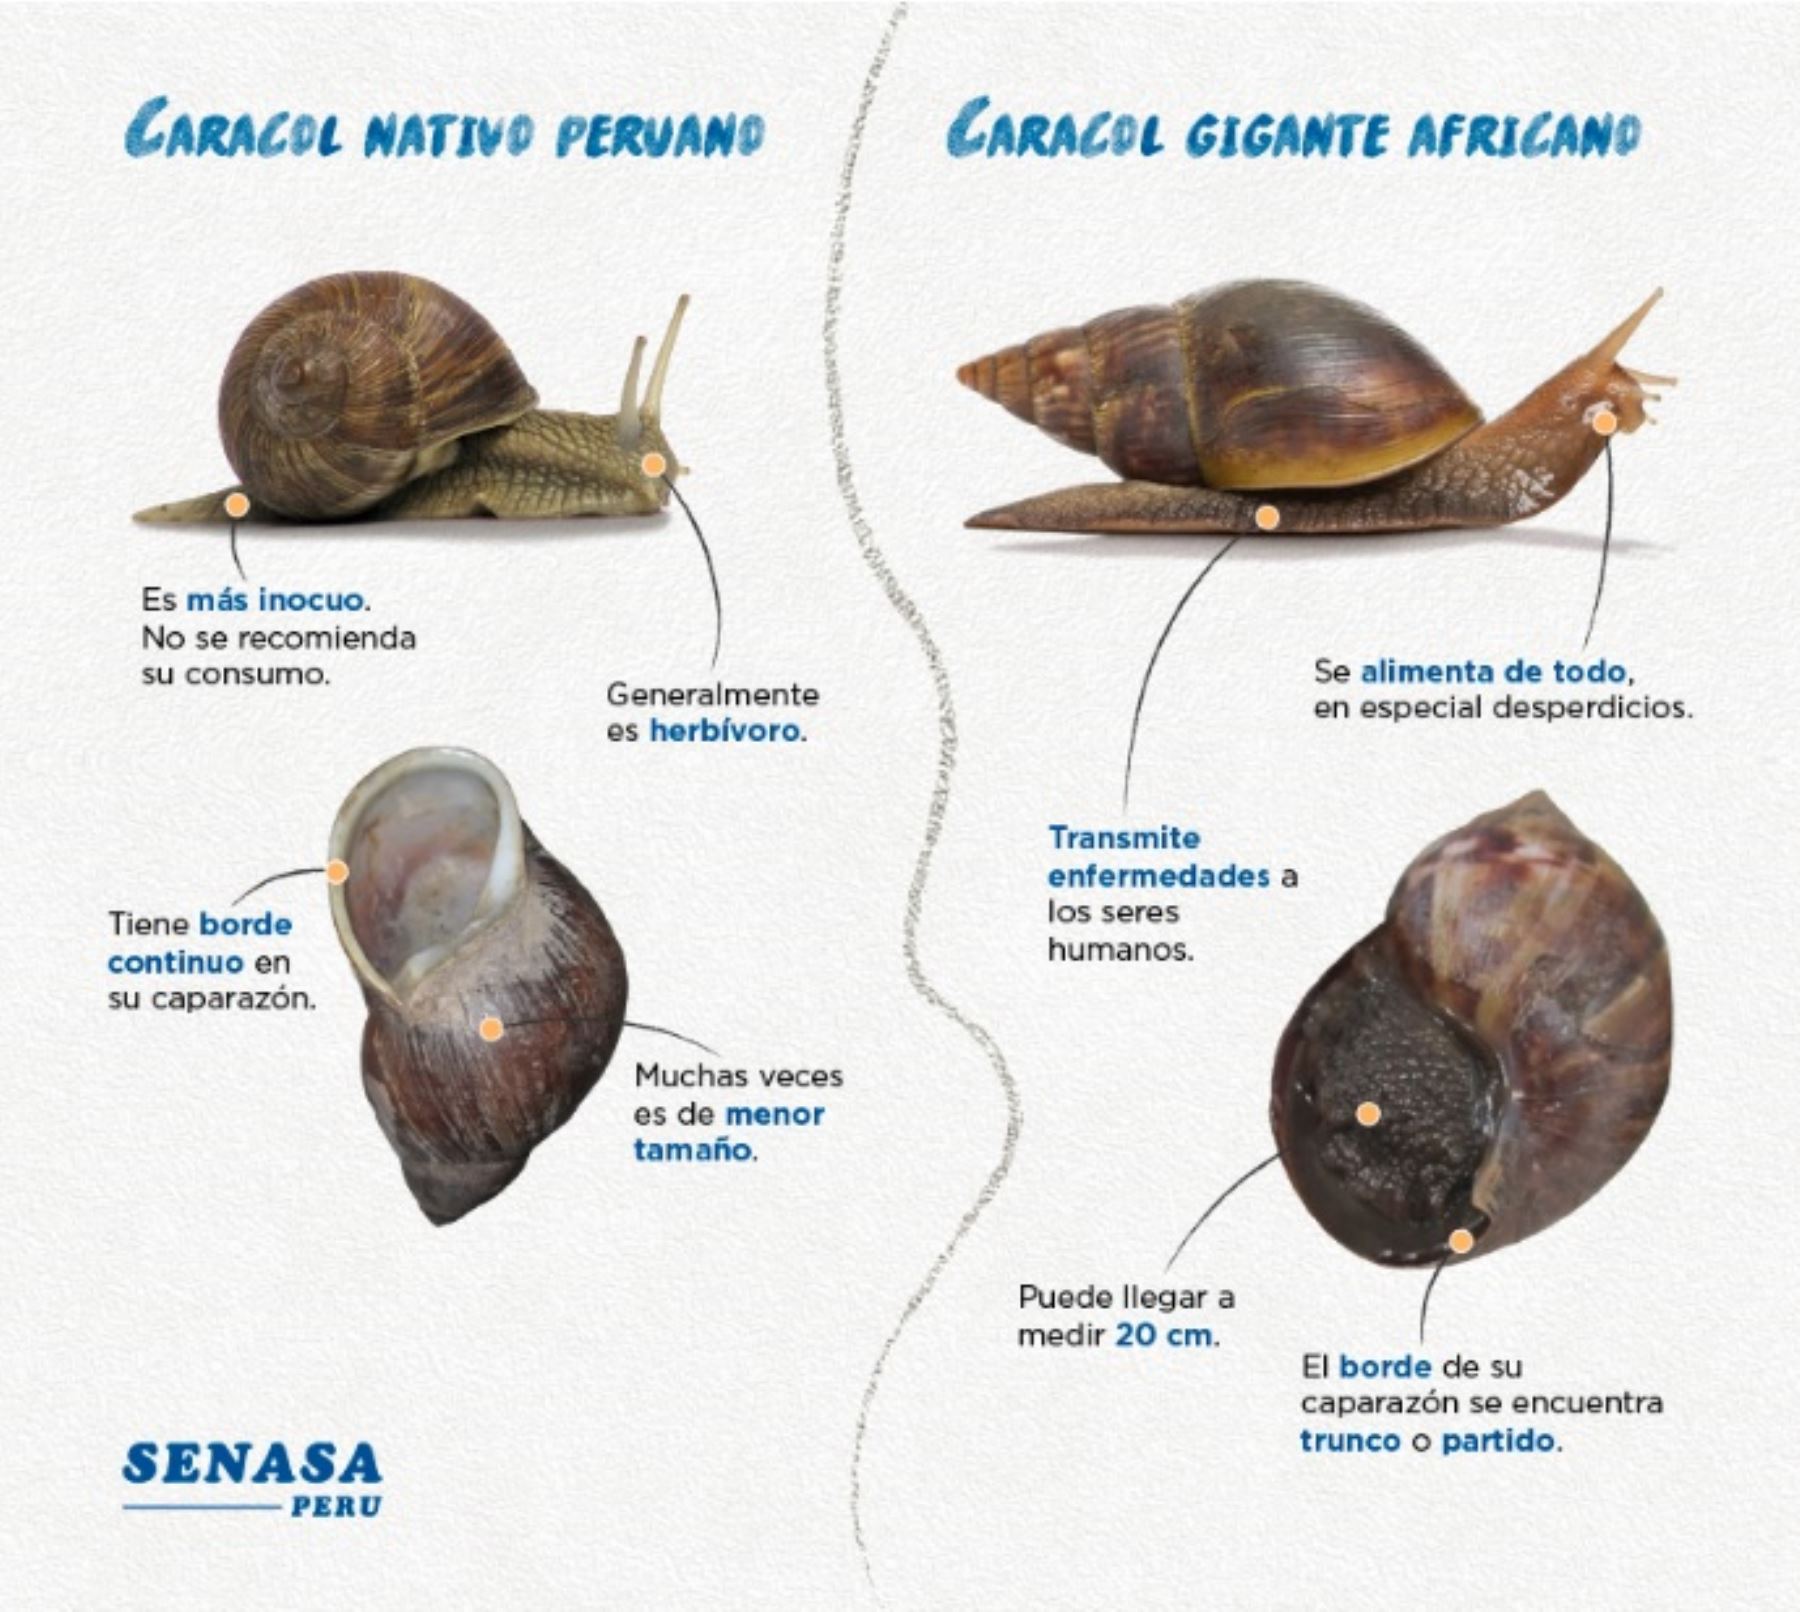 Diferencias entre el caracol común y el caracol gigante africano, según el Servicio Nacional de Sanidad Agraria (Senasa).